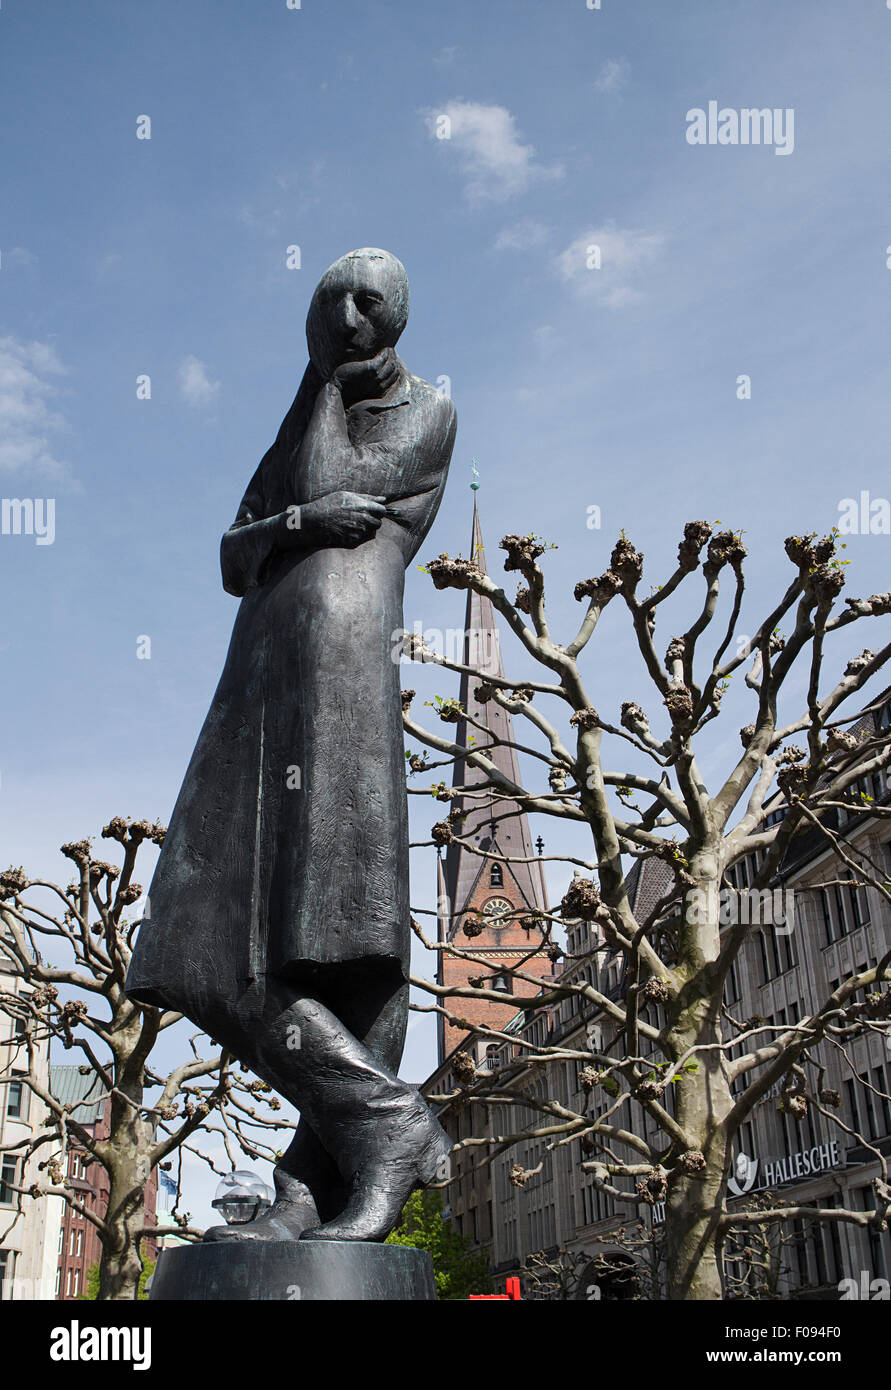 Statue of Heinrich Heine in Rathausmarkt, Hamburg, Germany Stock Photo -  Alamy